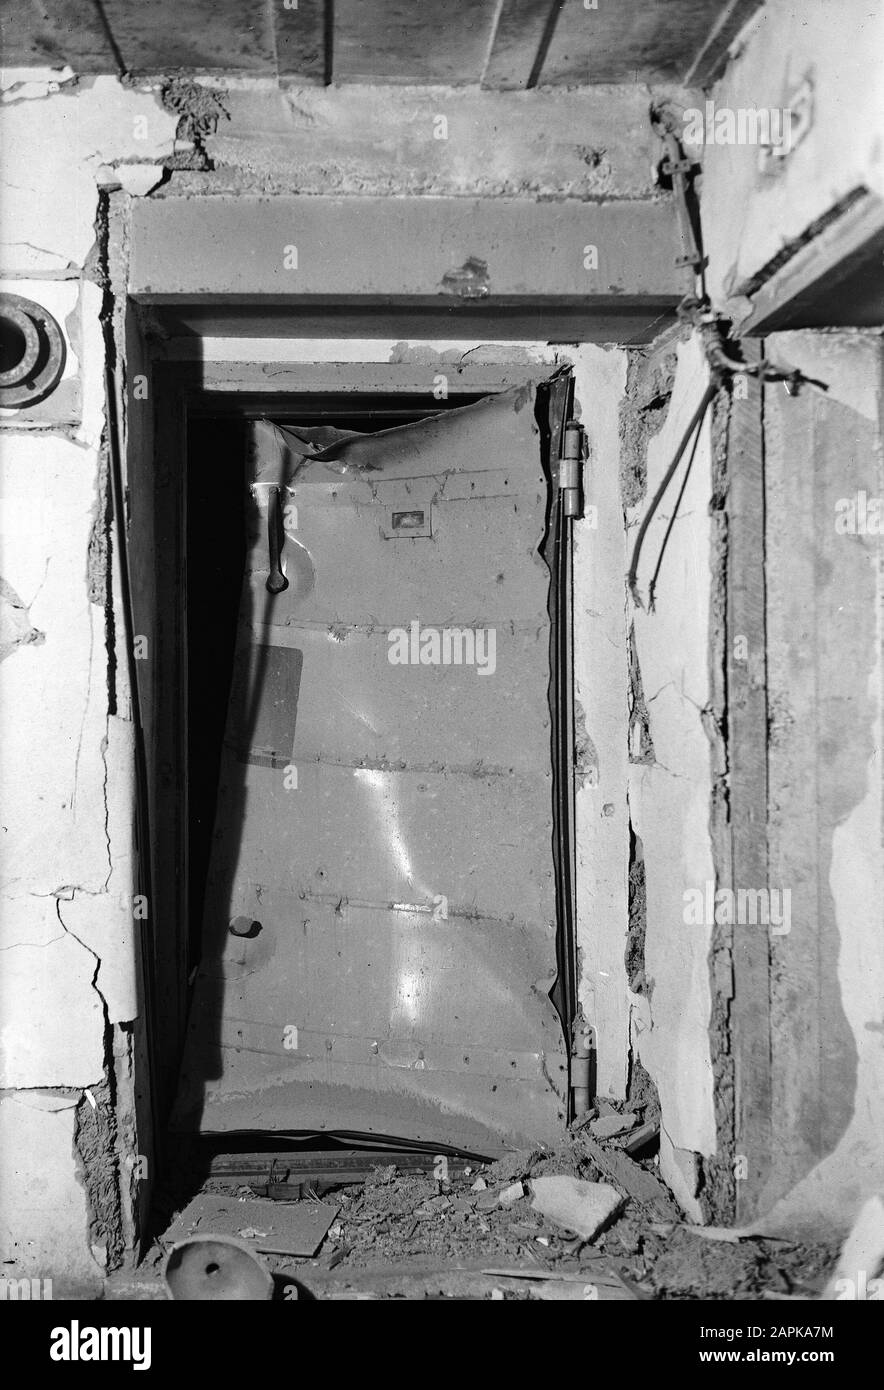 10 x 15 Test d'une bouteille d'oxygène prise par l'Ir. Groeneveld dans un  bunker à Kijkduin. (Enregistrement de la porte du bunker après l'explosion  Date: Non daté lieu: Den Haag, Kijkduin mots